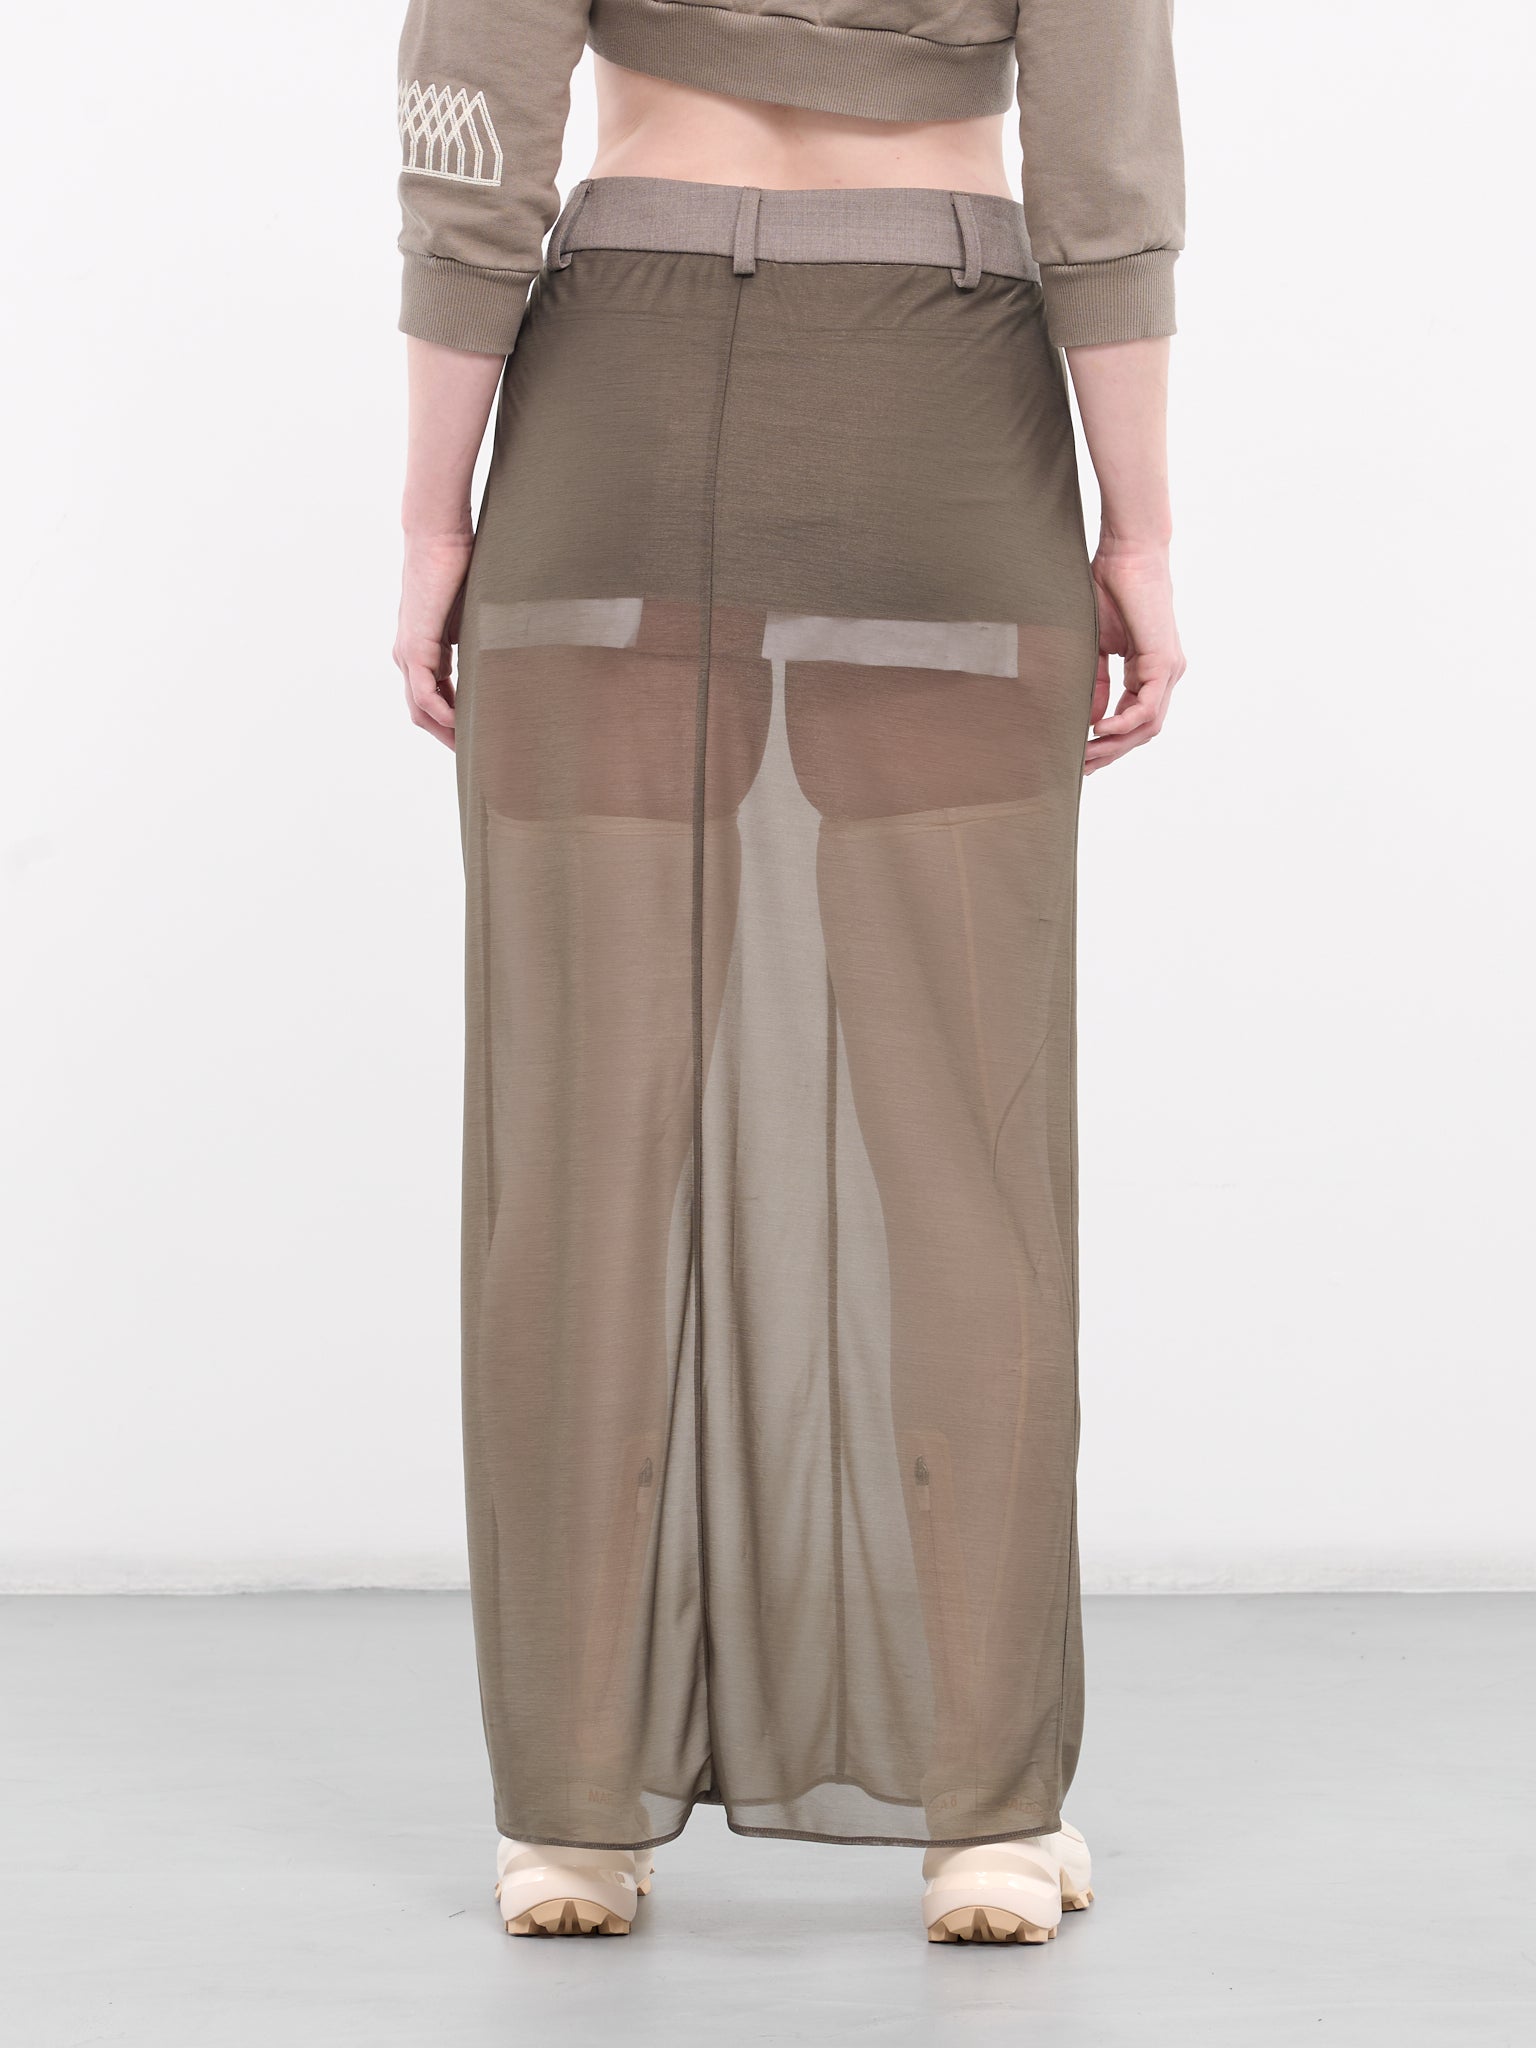 P.O.P. Transparent Skirt (1002027010-FUNGHI)